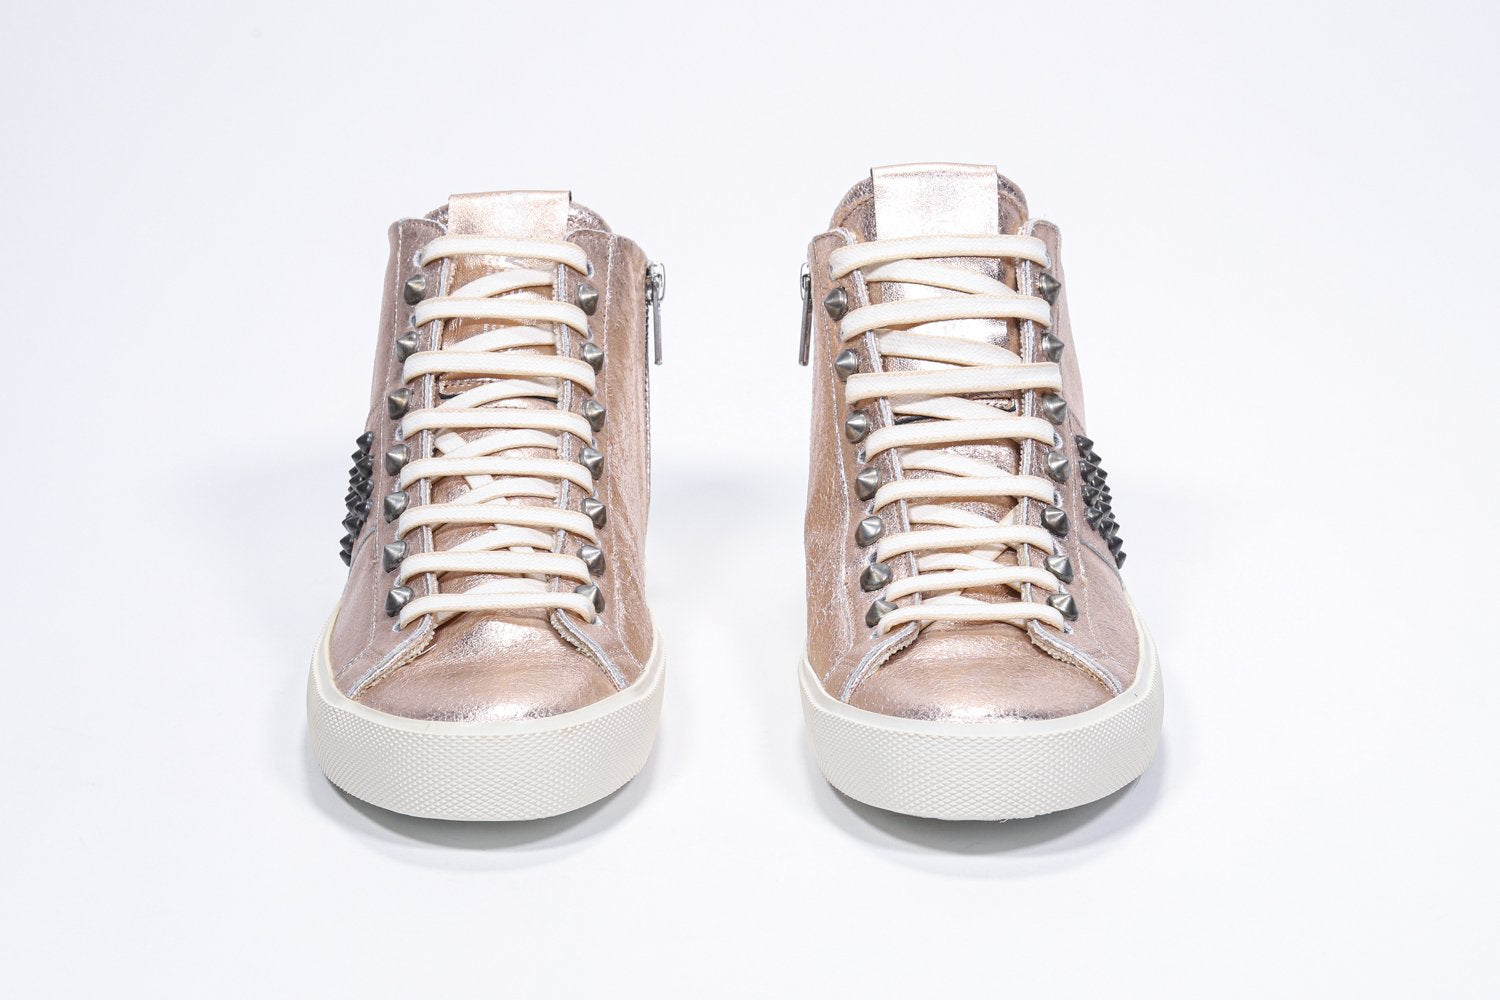 Vista frontale del mid top rosa metallizzato sneaker. Tomaia in pelle con borchie, zip interna e suola in gomma vintage.